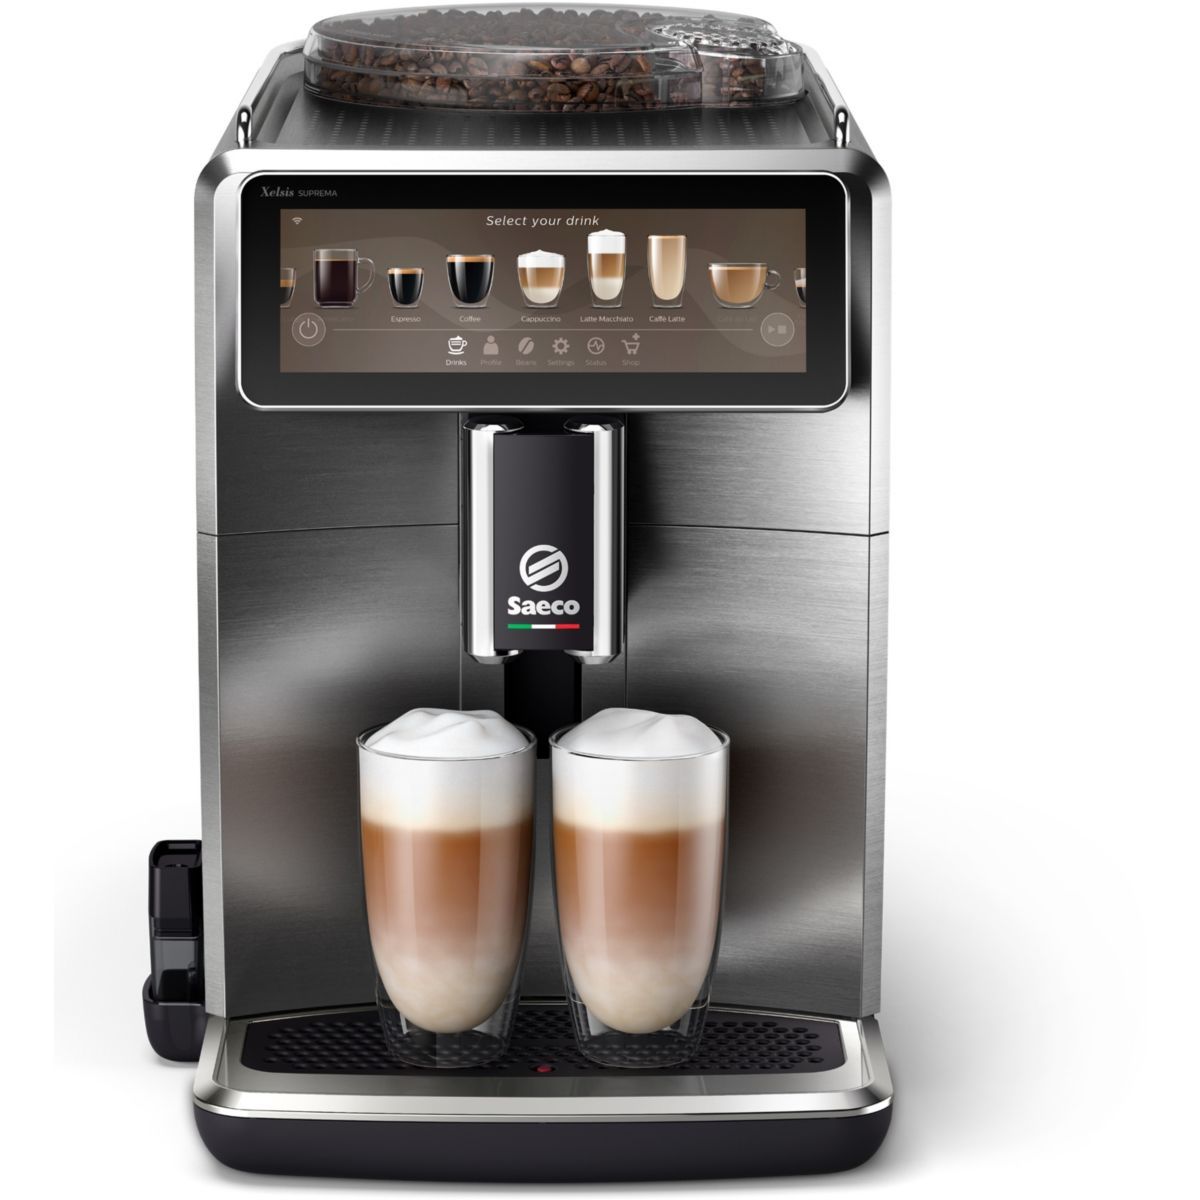 Chauffe-eau chaud et froid automatique pour machine à mousse latte, café  chocolat chaud machine à café cappuccino 